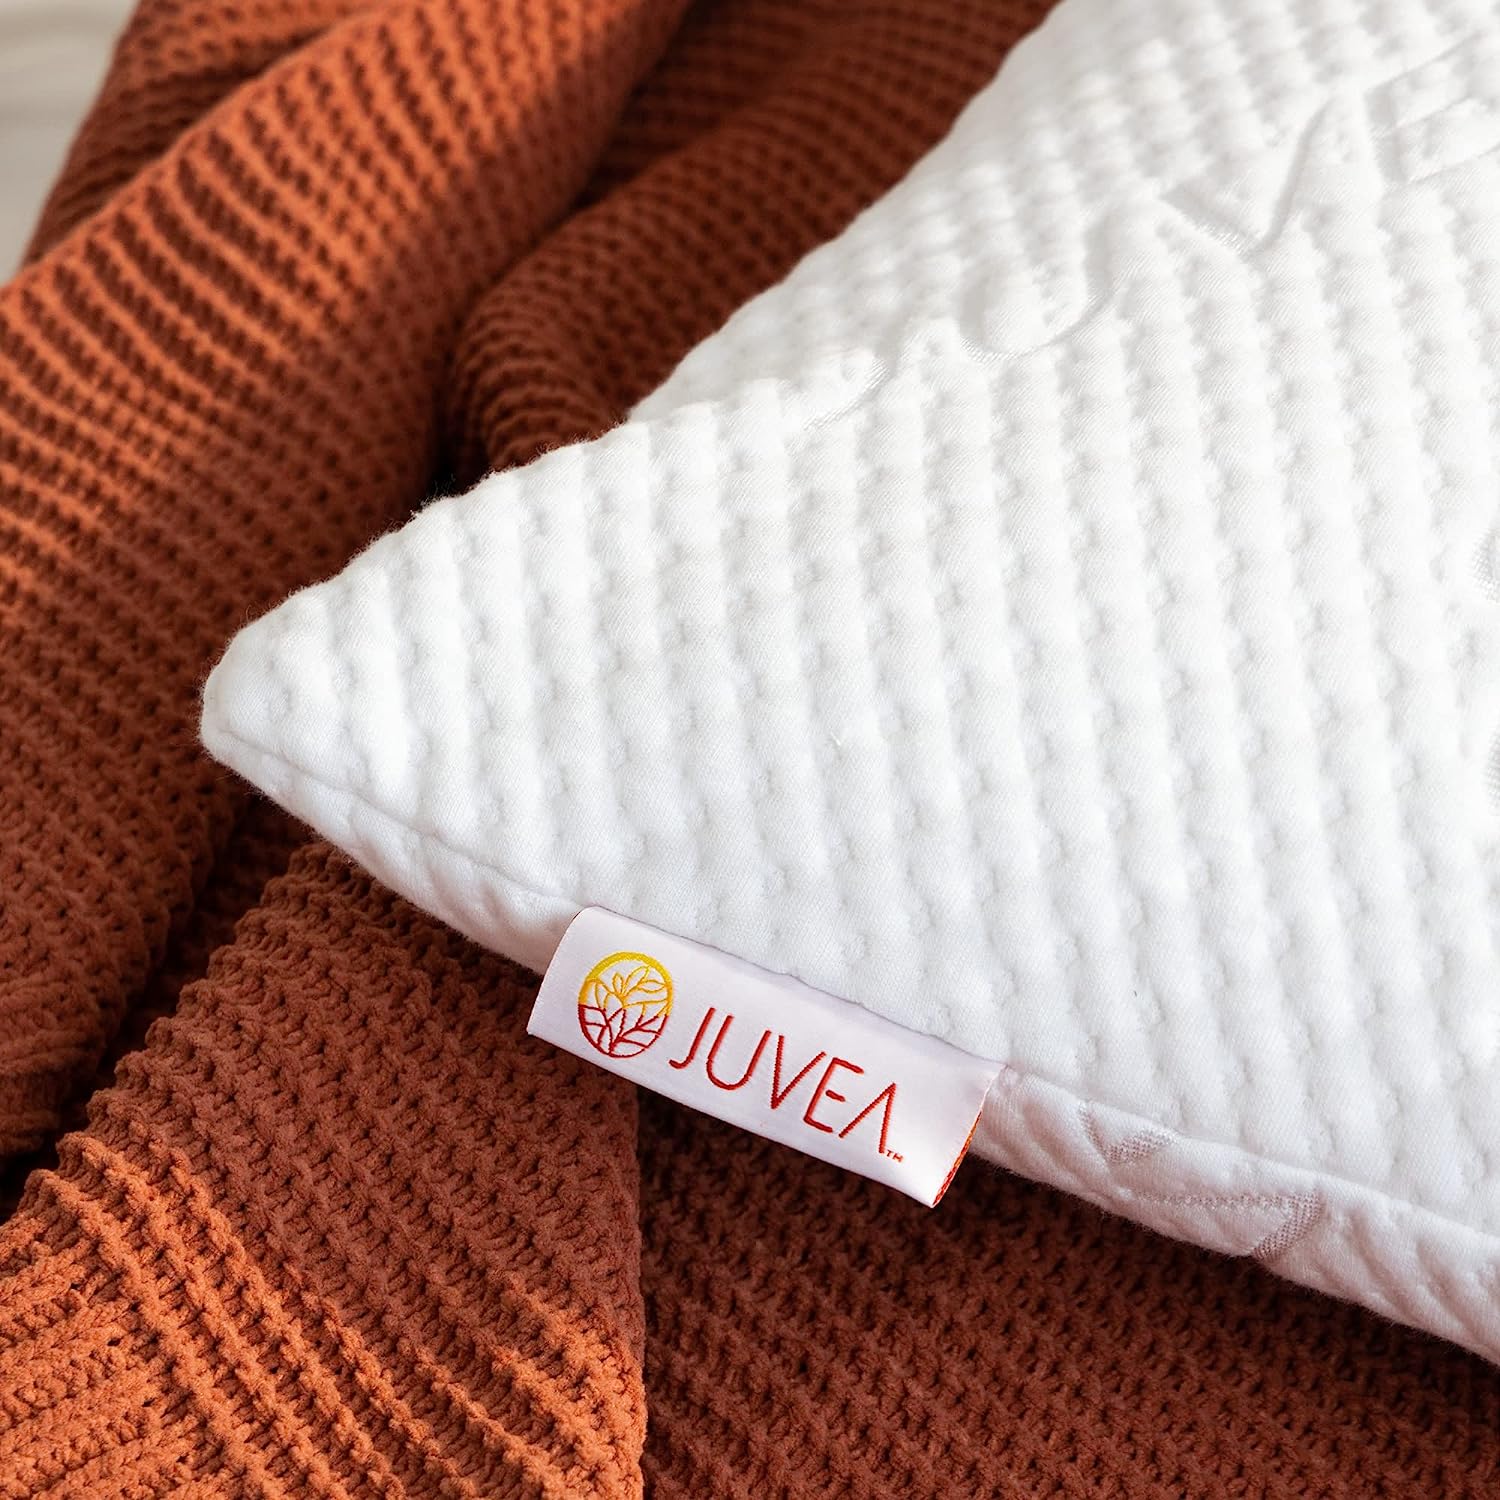 Detail shot of Juvea Pillow